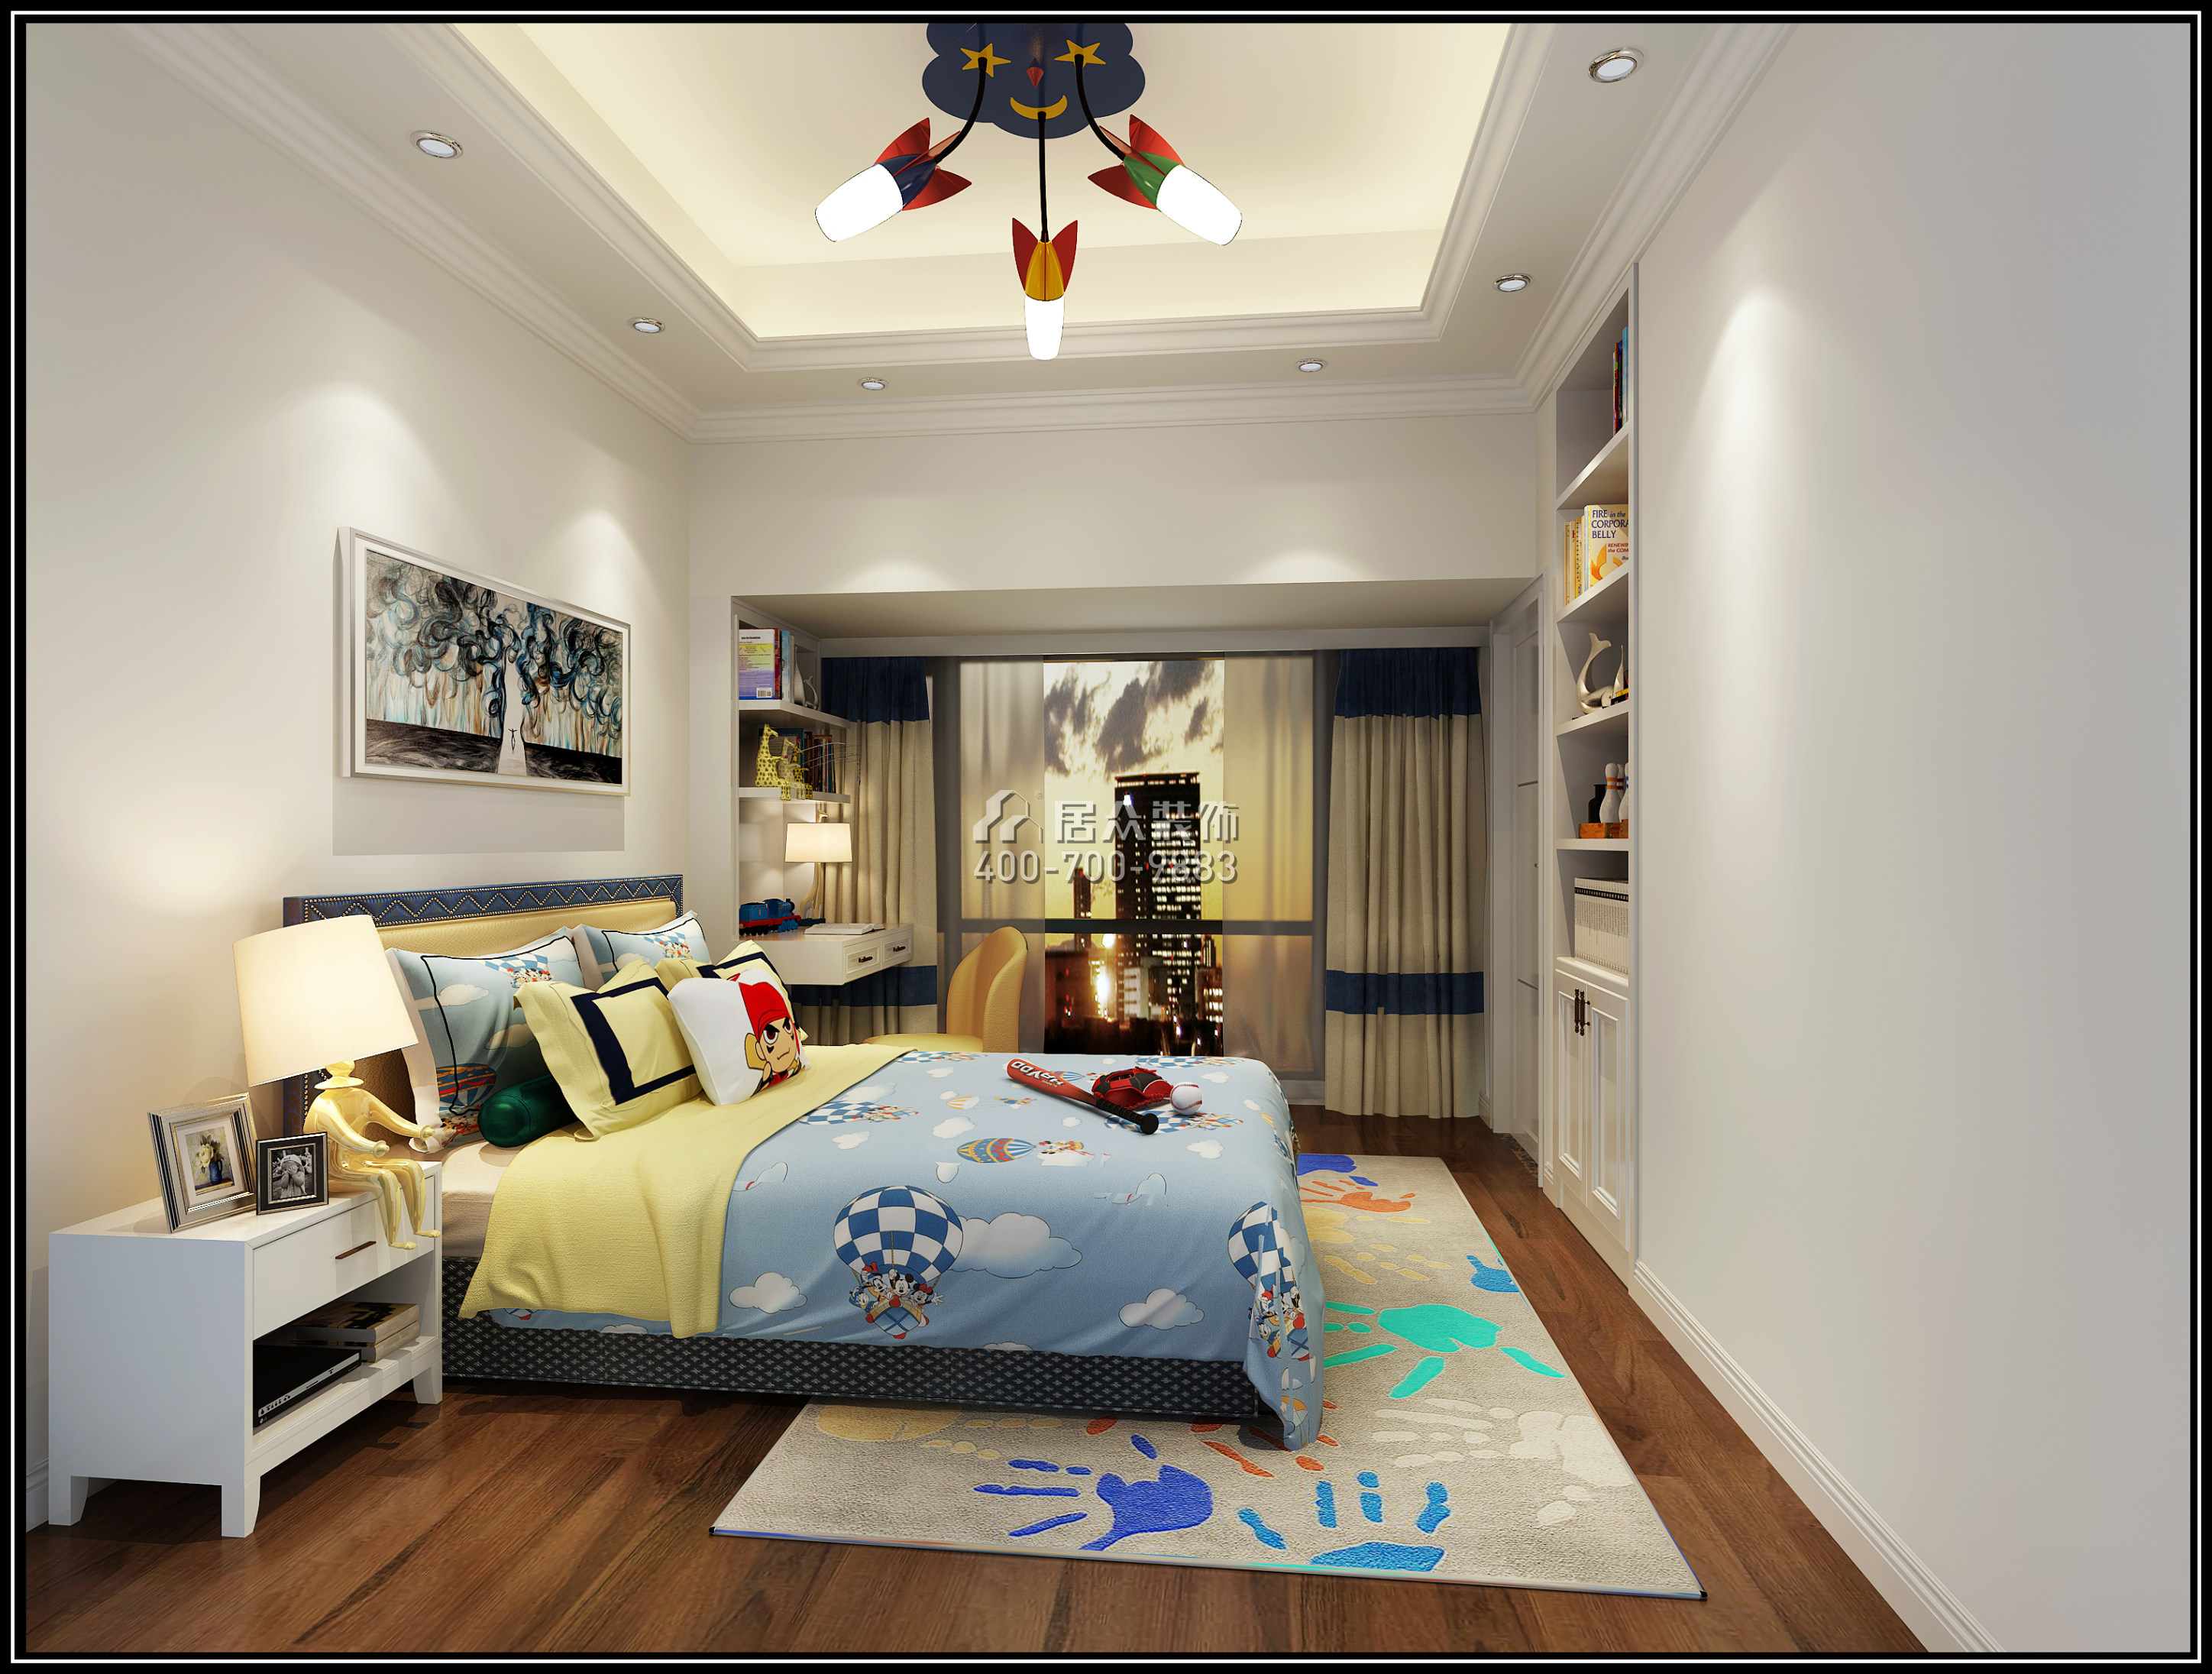 华润城润府150平方米中式风格平层户型卧室装修效果图